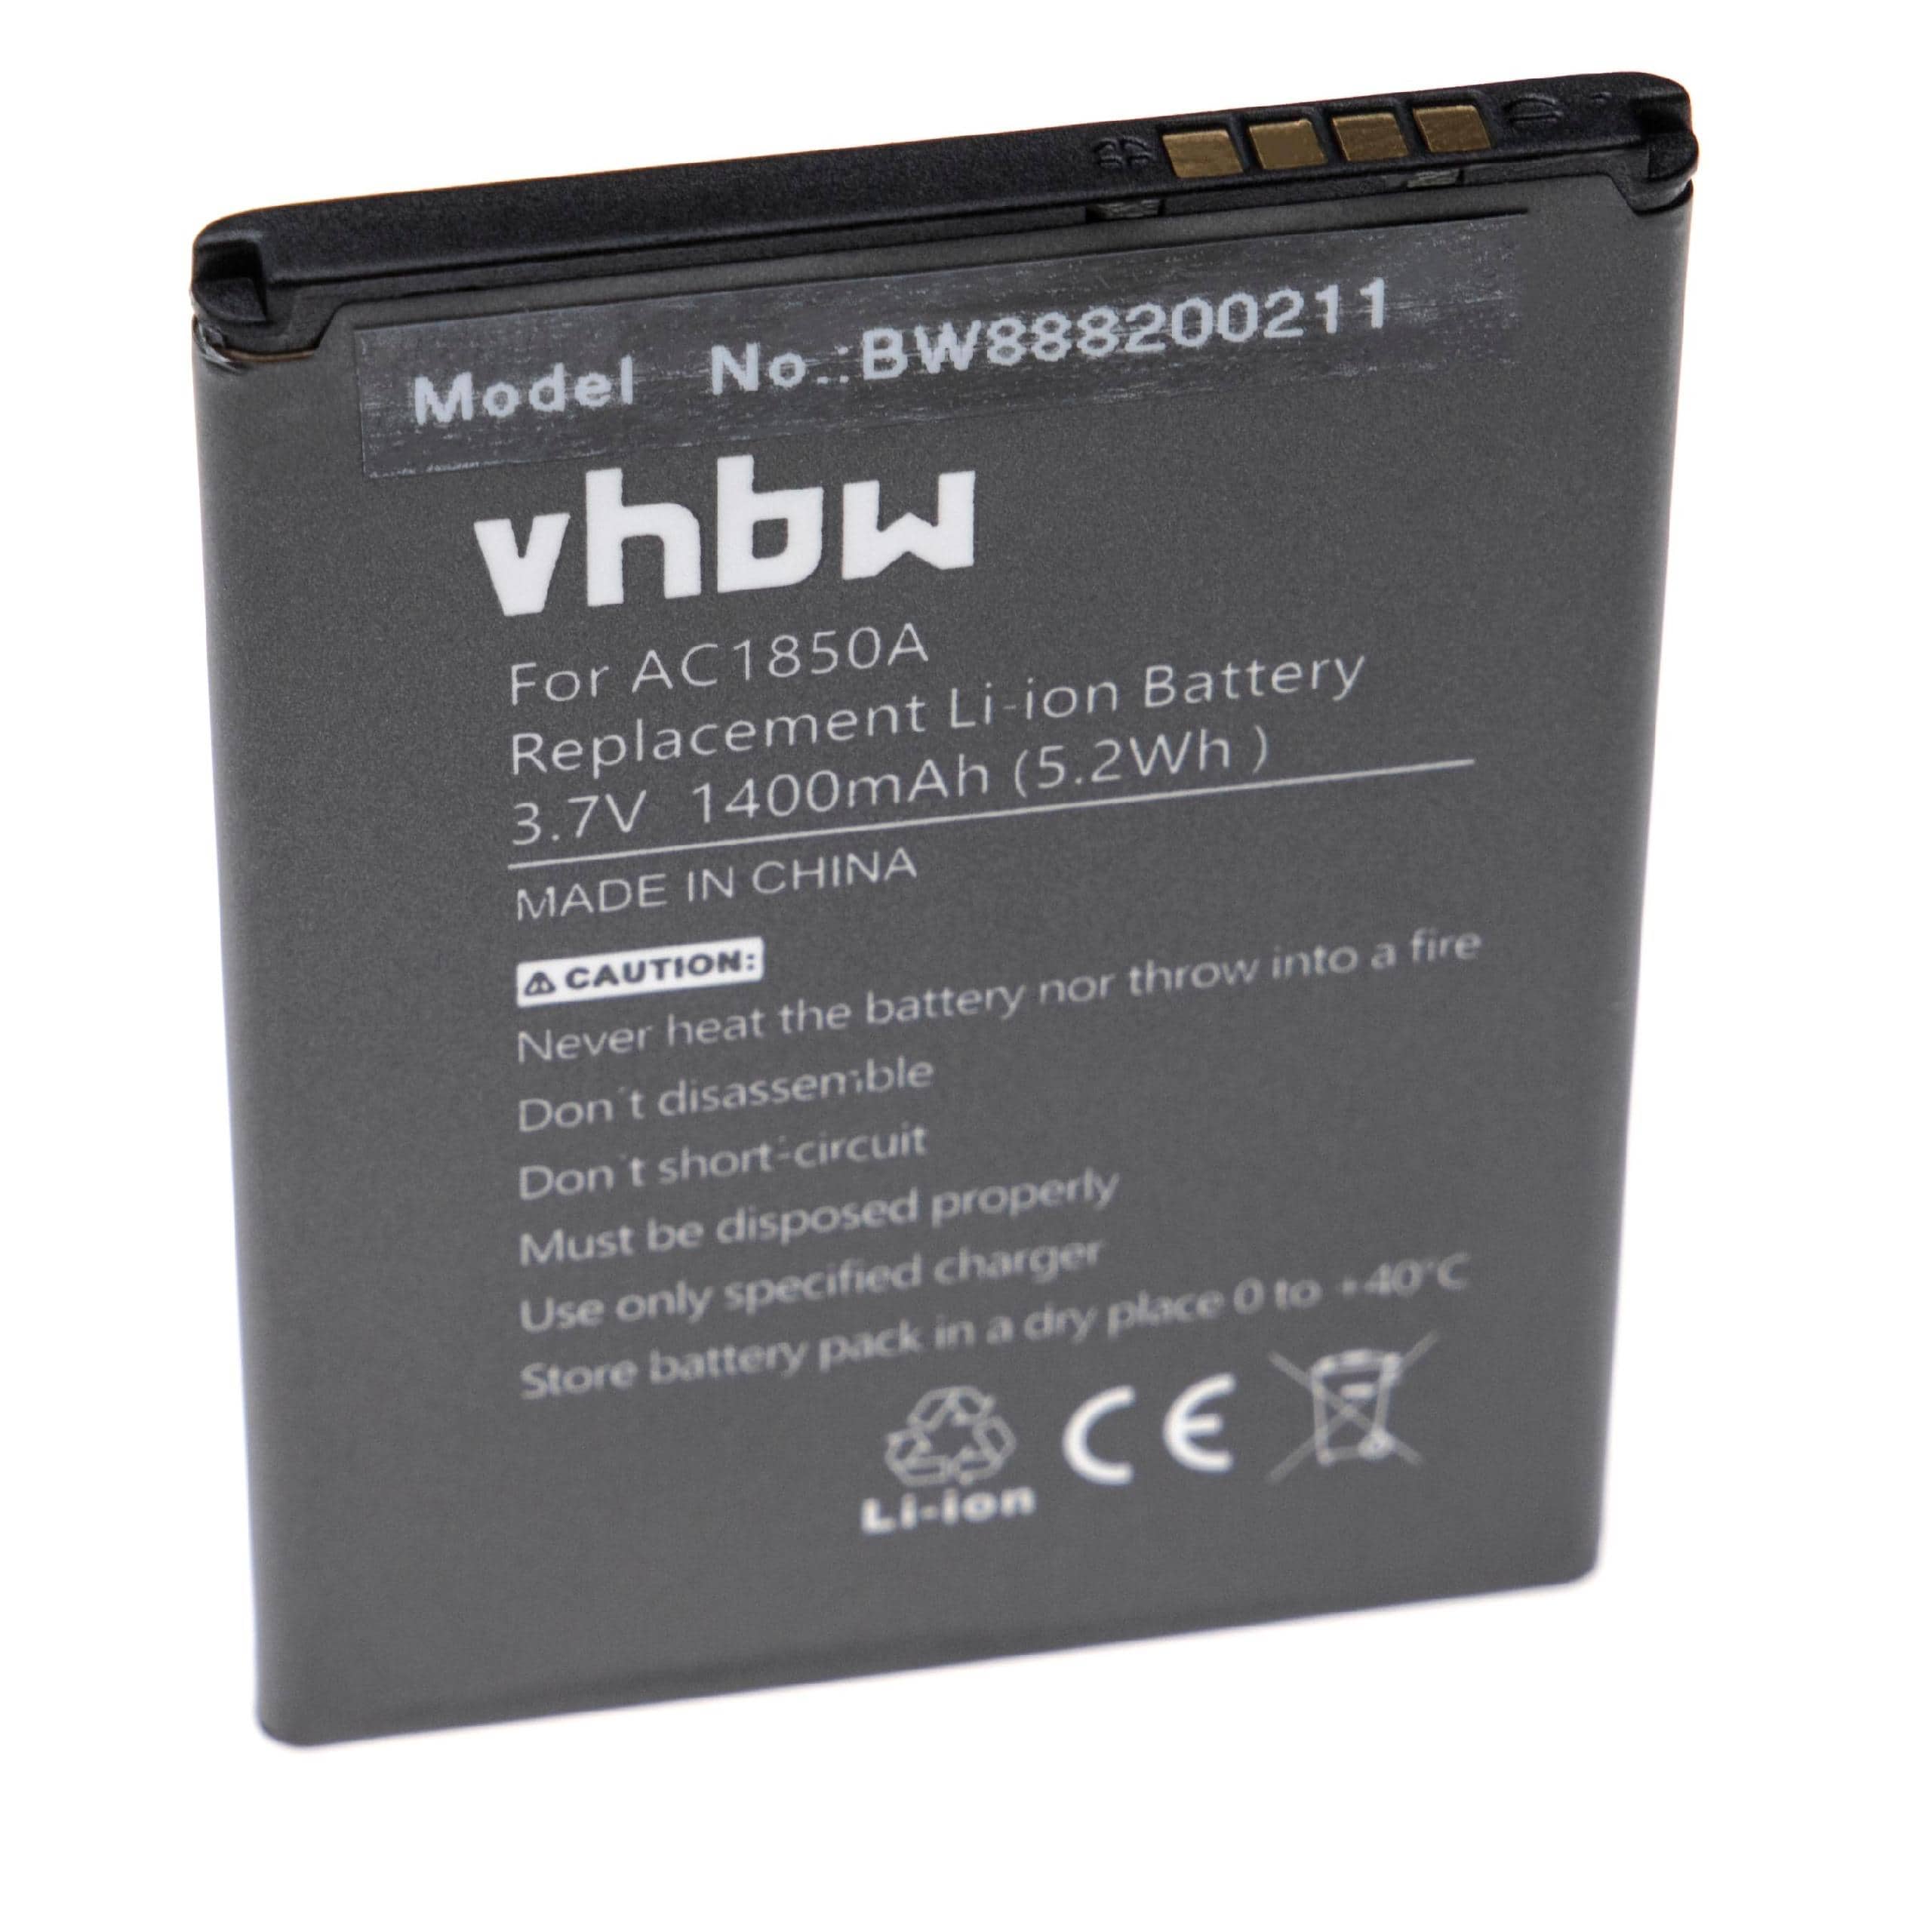 Akumulator bateria do telefonu smartfona zam. Archos AC1850A - 1400mAh, 3,7V, Li-Ion